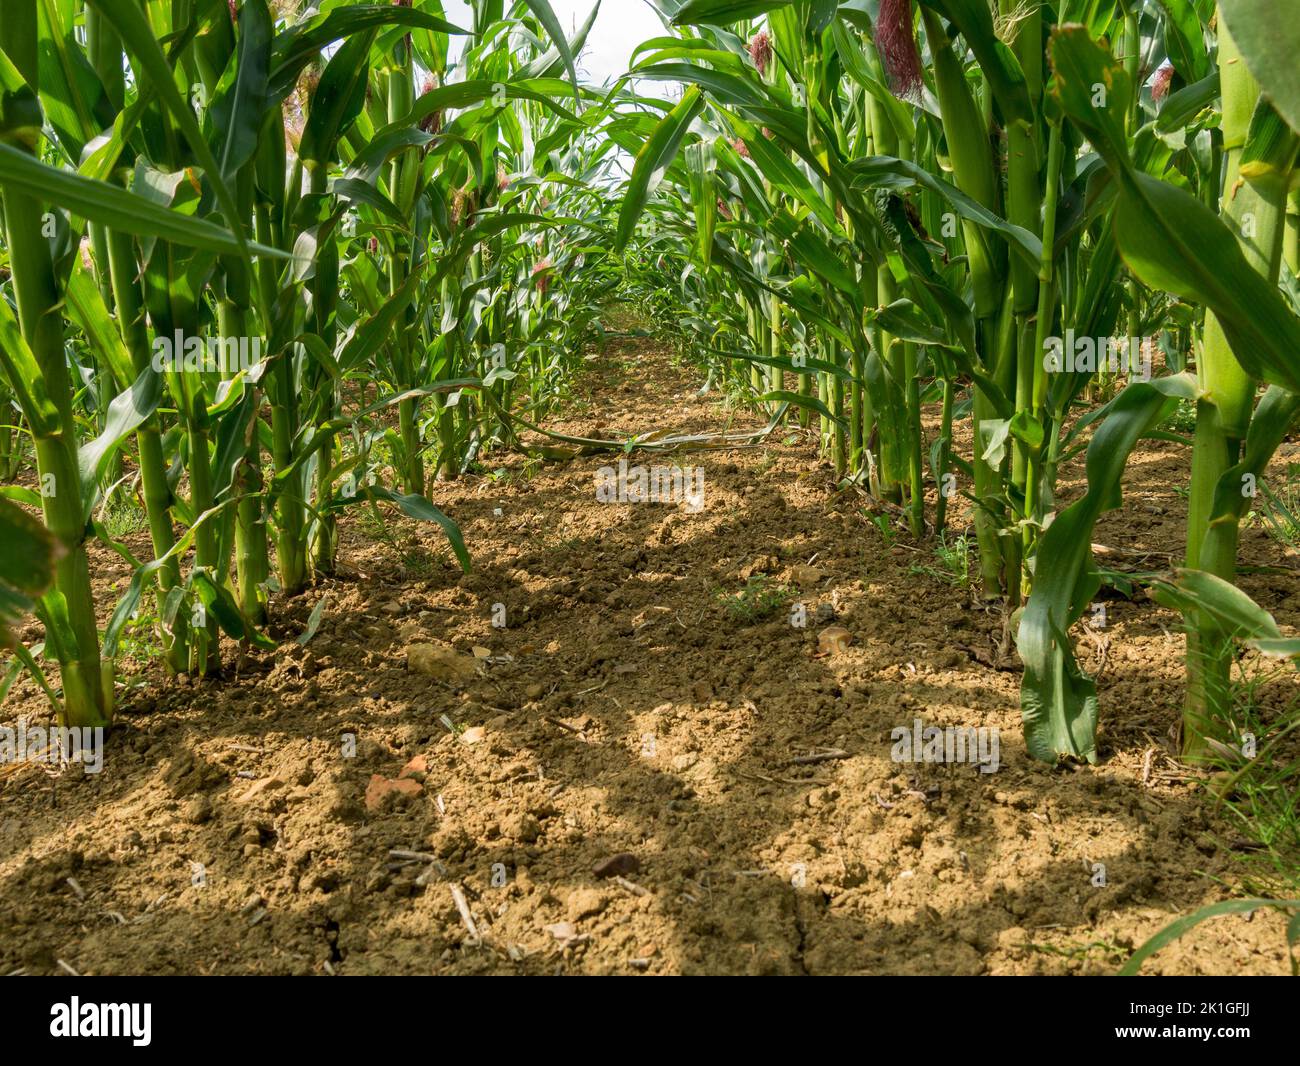 Vista entre hileras de tallos de maíz dulce que crecen en campo agrícola, Leicestershire, Inglaterra, Reino Unido Foto de stock